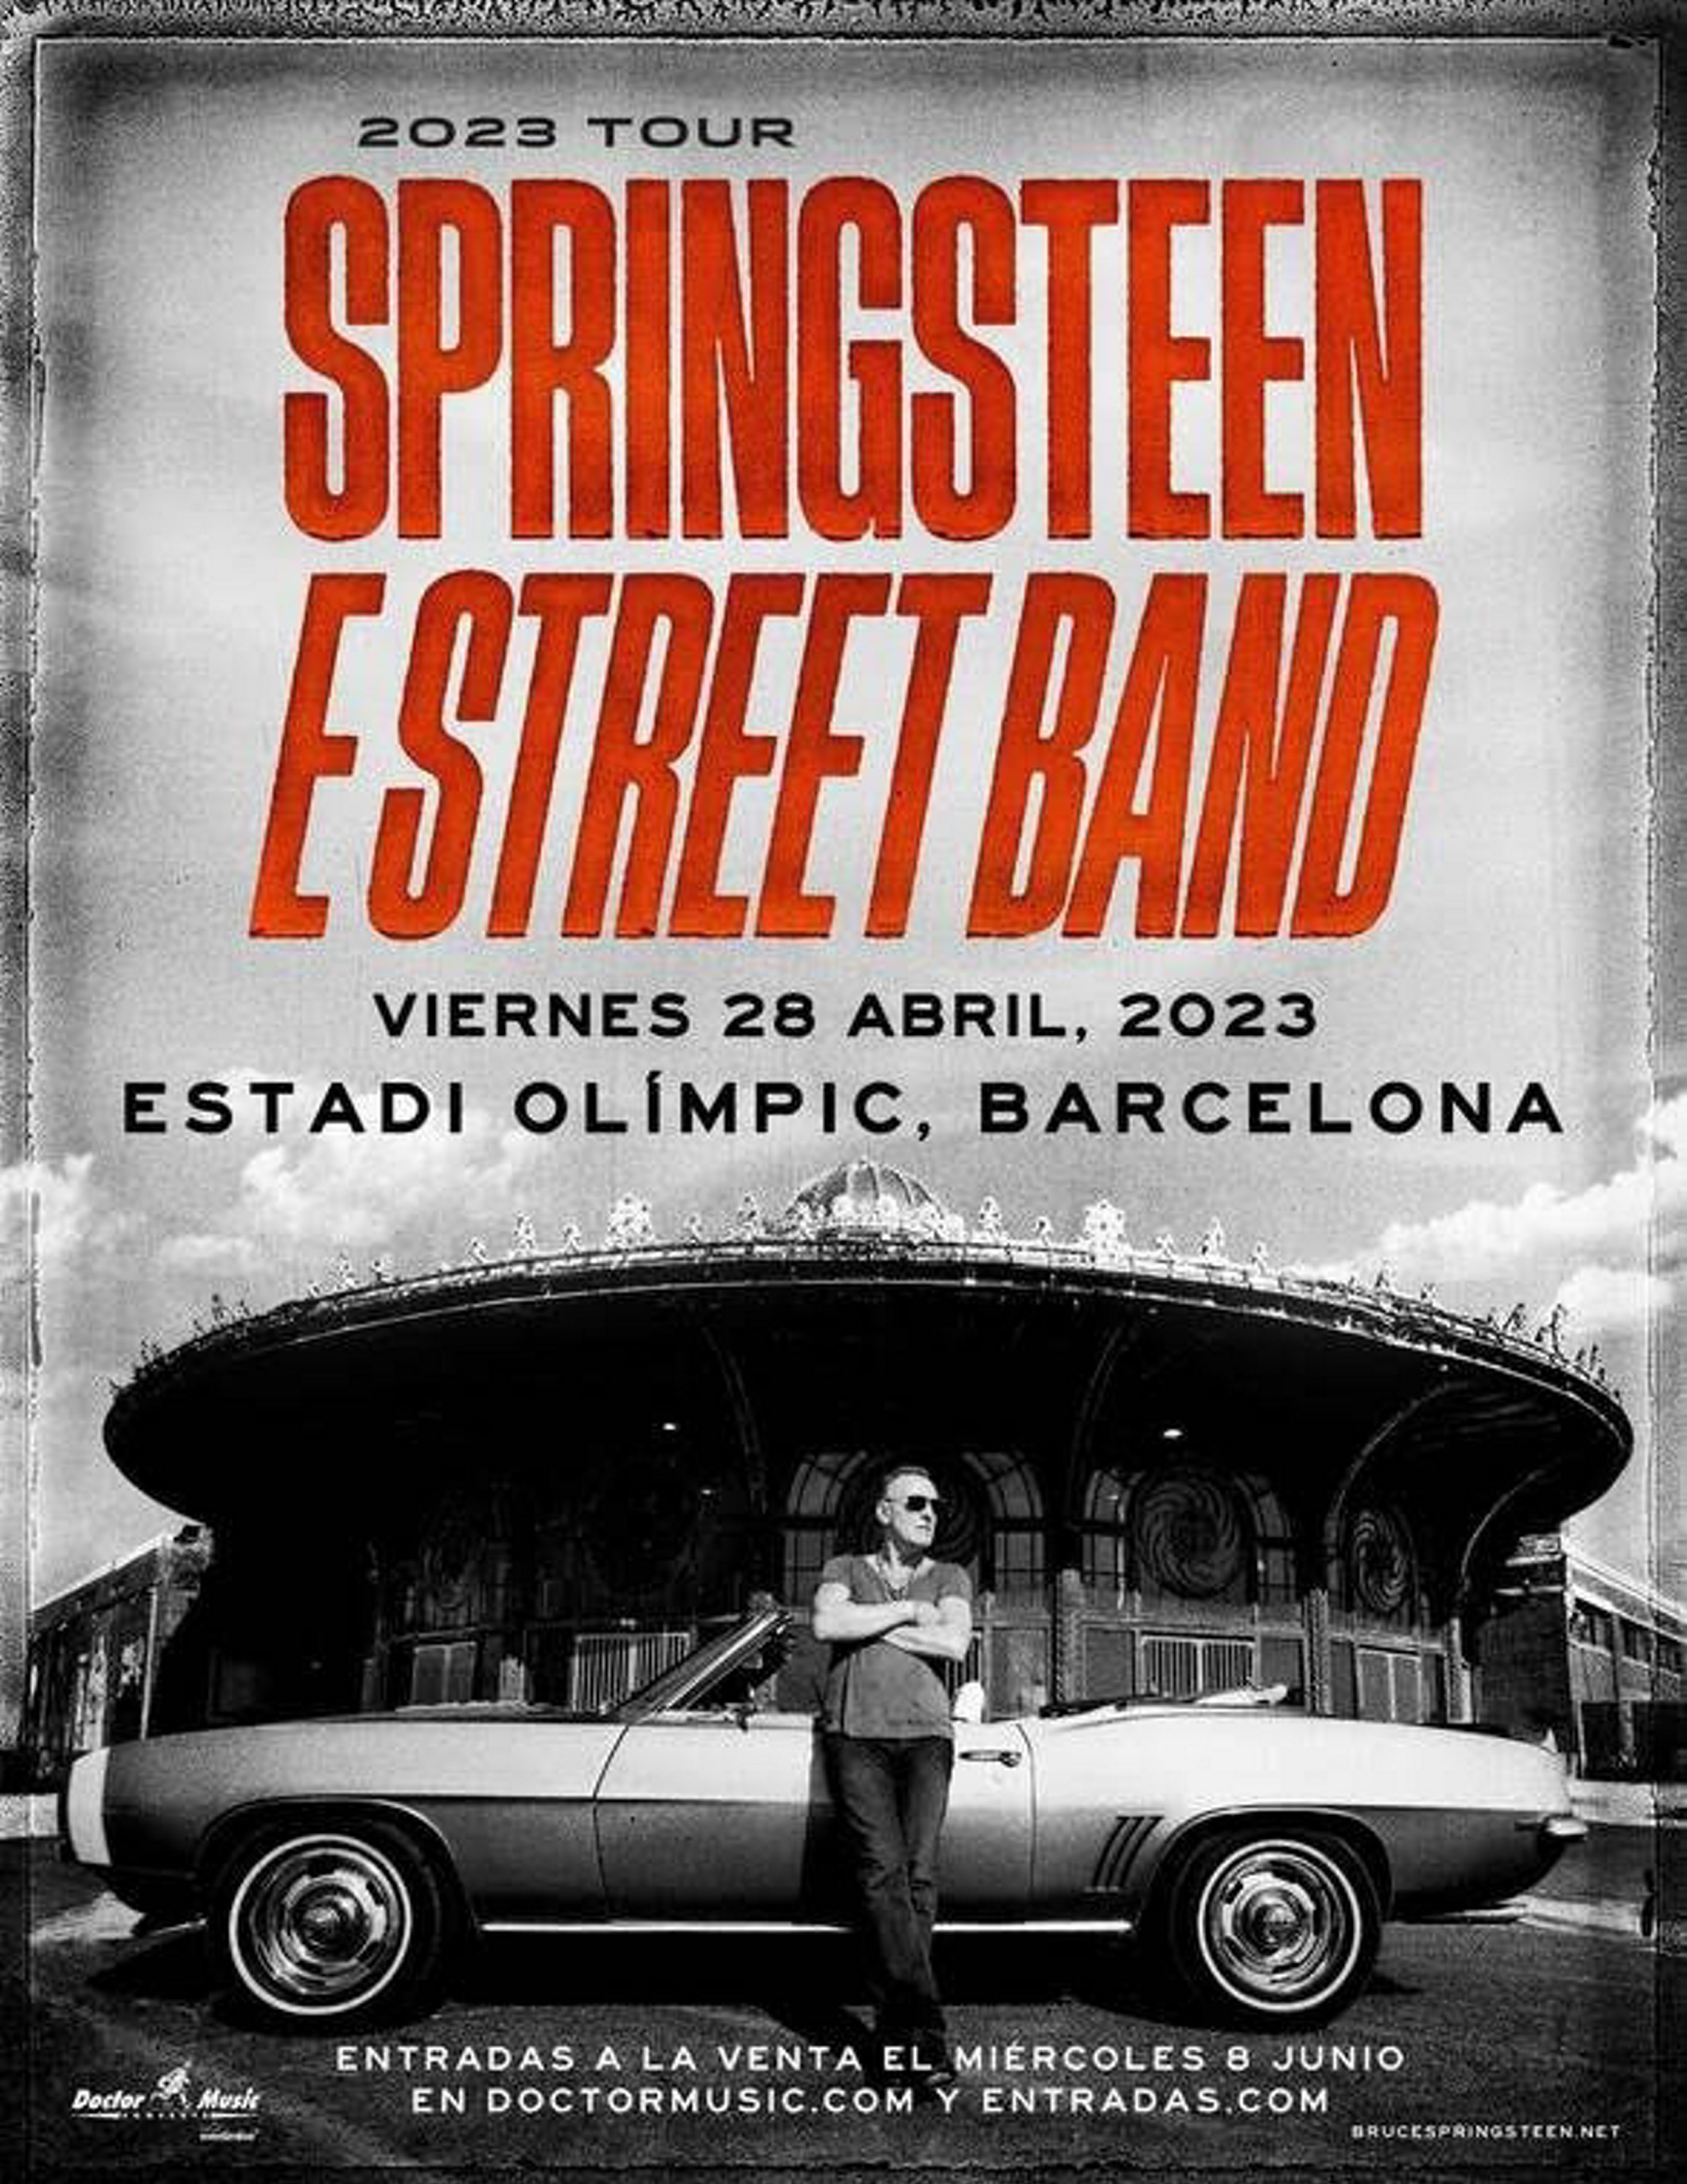 Bruce Springsteen anuncia una gira europea que empezará en Barcelona el